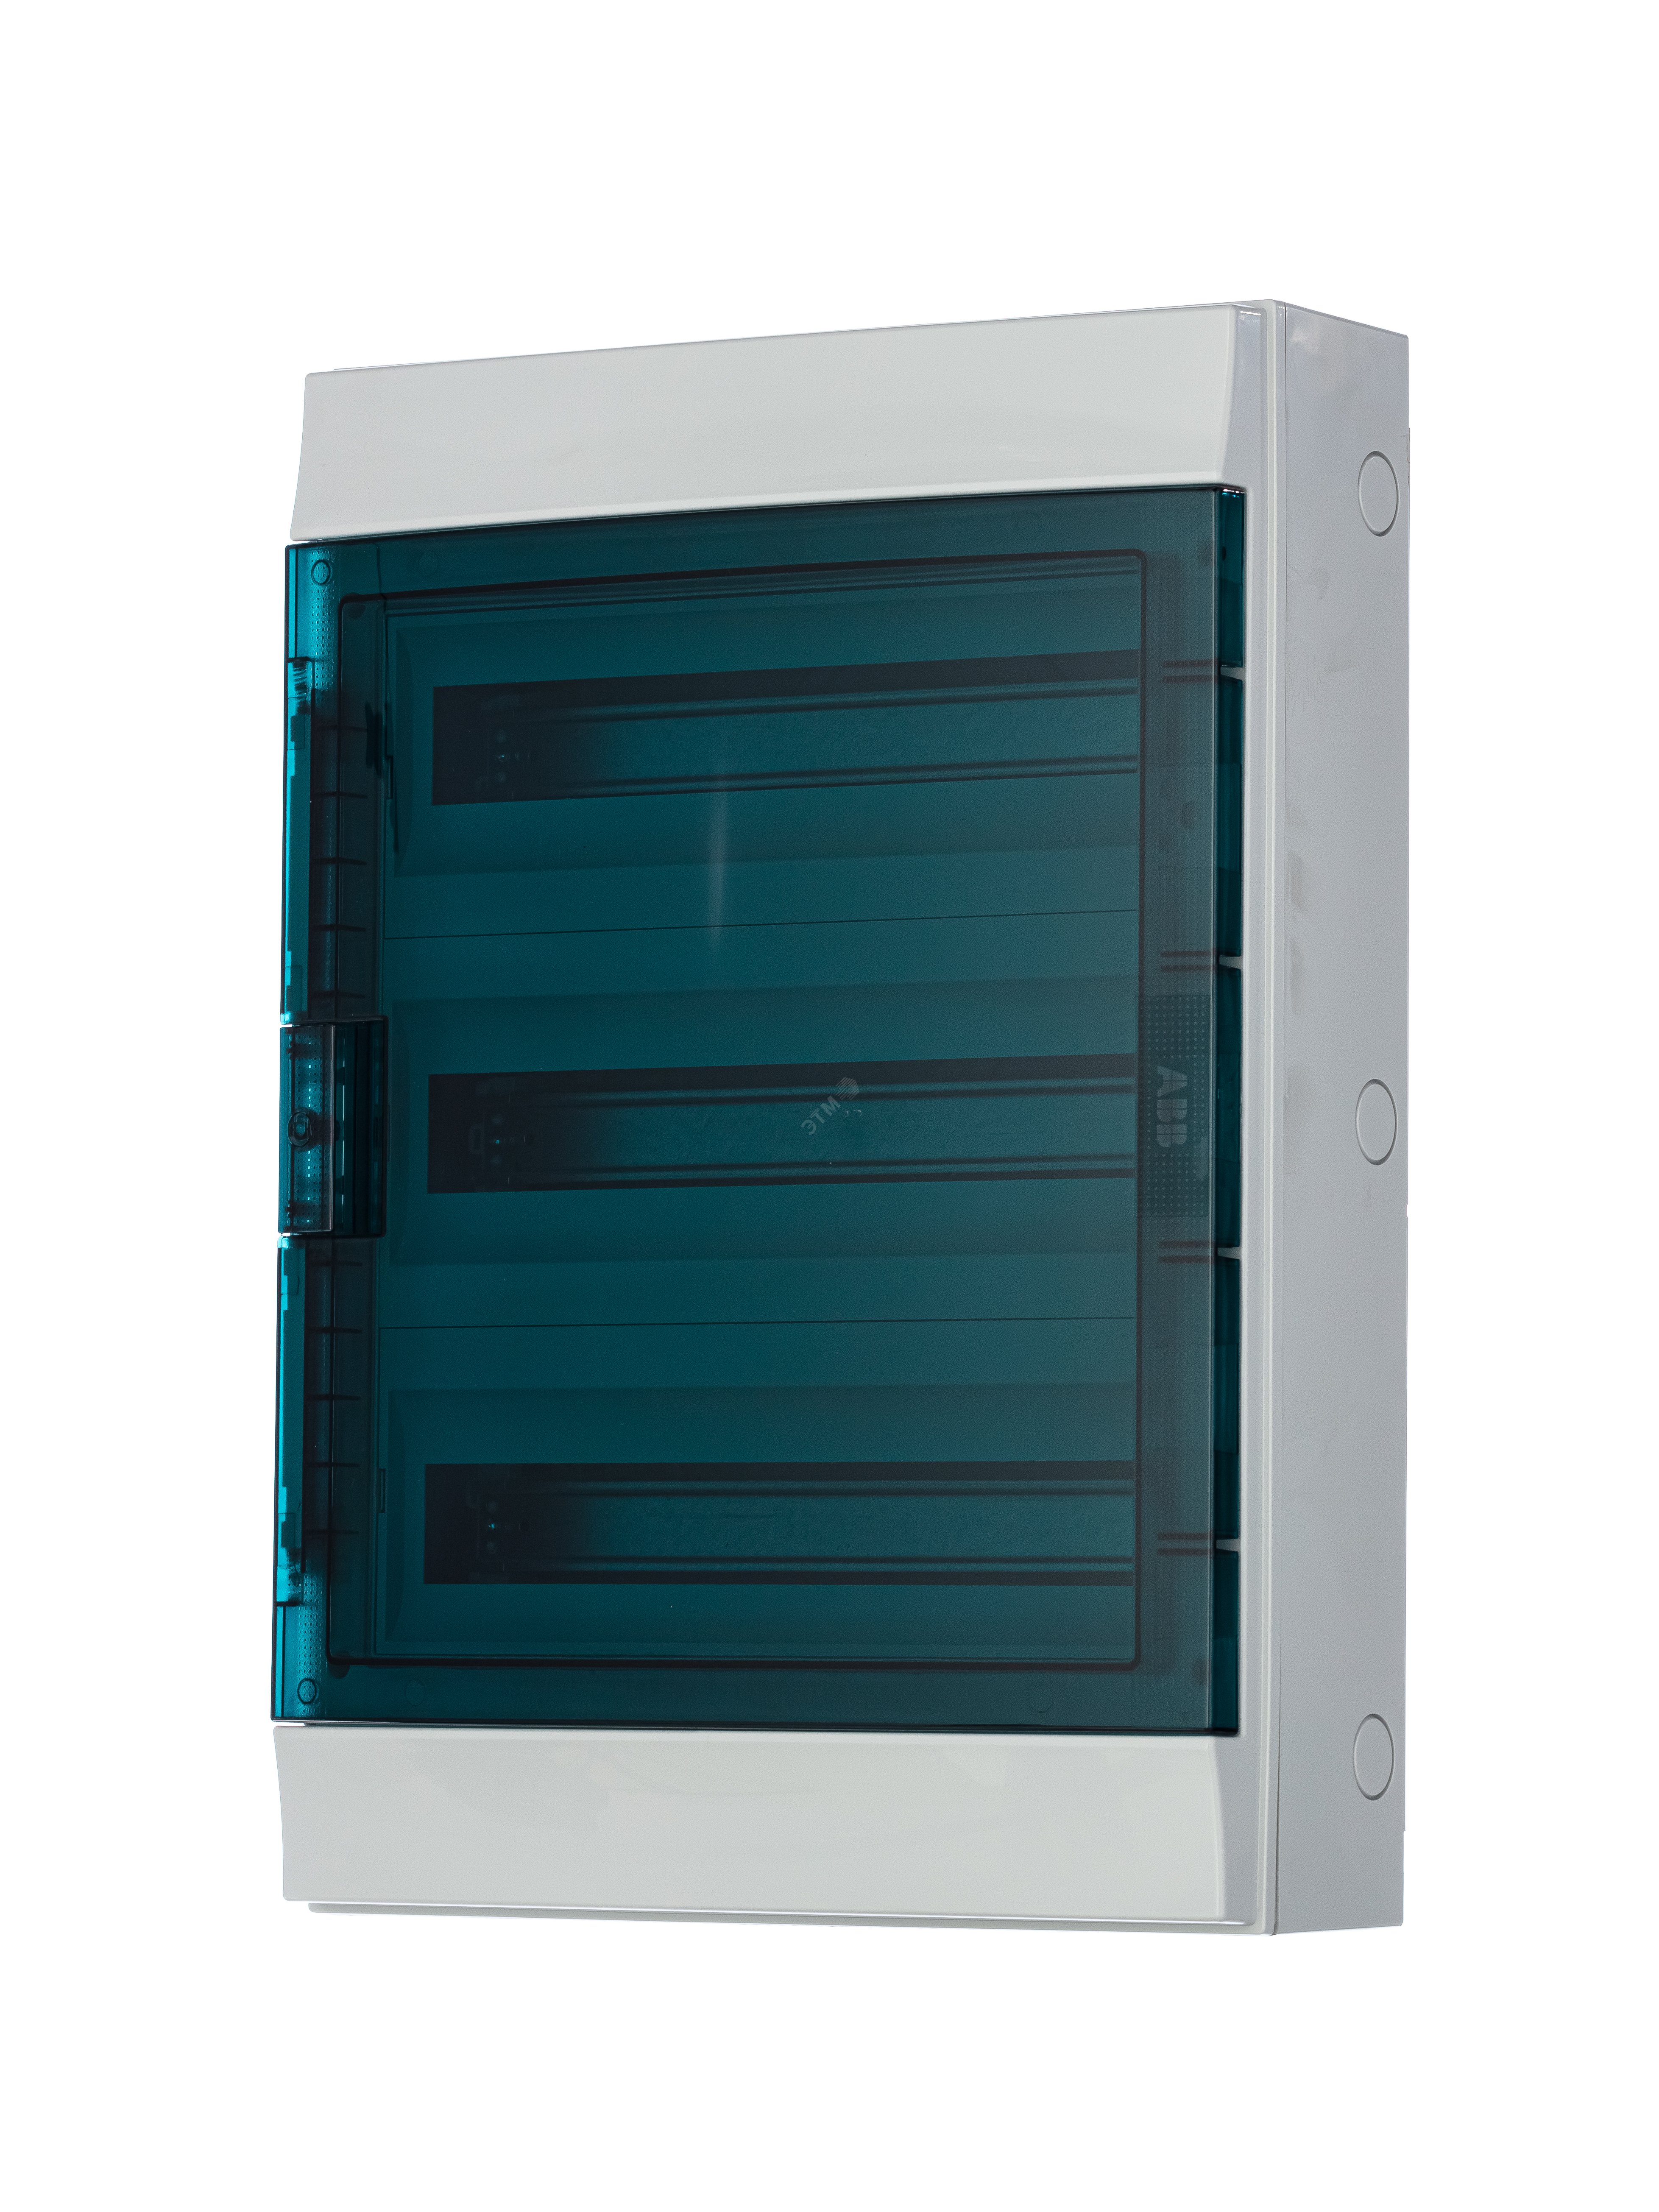 Щит распределительный навесной ЩРн-п-54 пластиковый Mistral65 серая прозрачная дверь с клеммами IP65 (65P18X32A) 1SLM006501A1208 ABB - превью 3